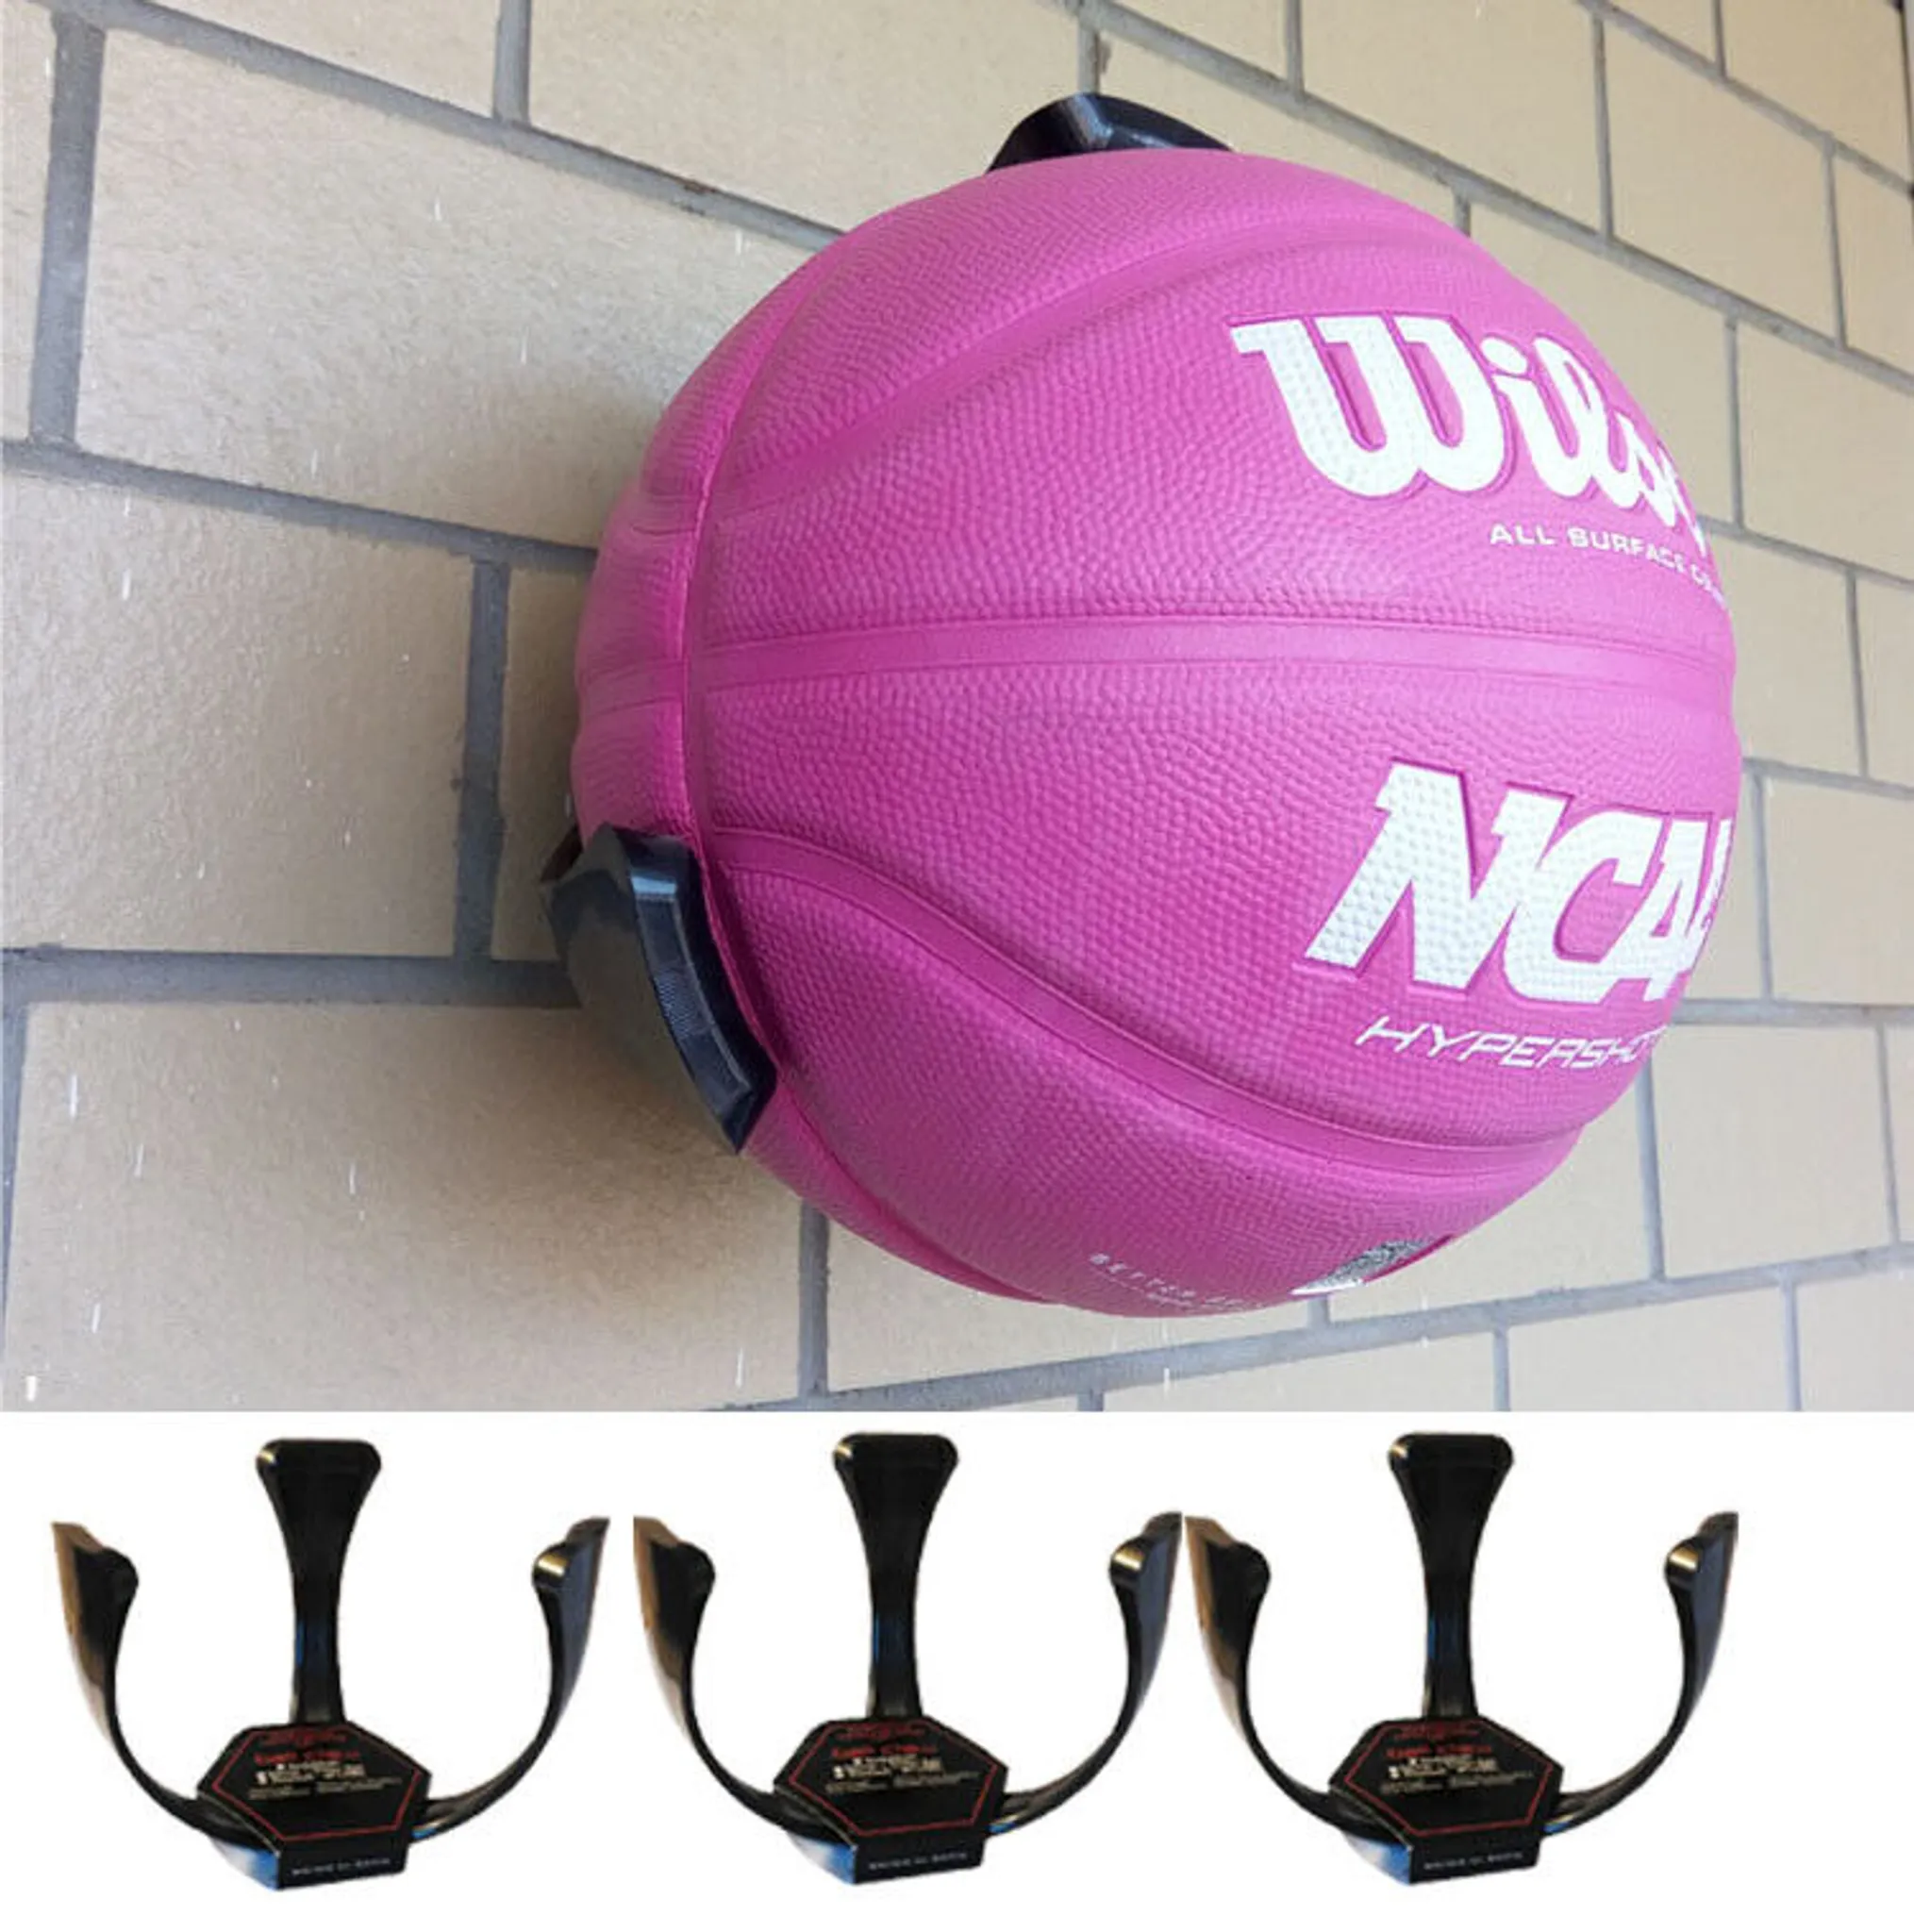 Newtic Wandhalterung Ballhalter Wand für 6 Bälle, Basketball Wandhalterung,  Metall Ball Halter Schwarz mit Schrauben, Wandhalterung Ball Storage für